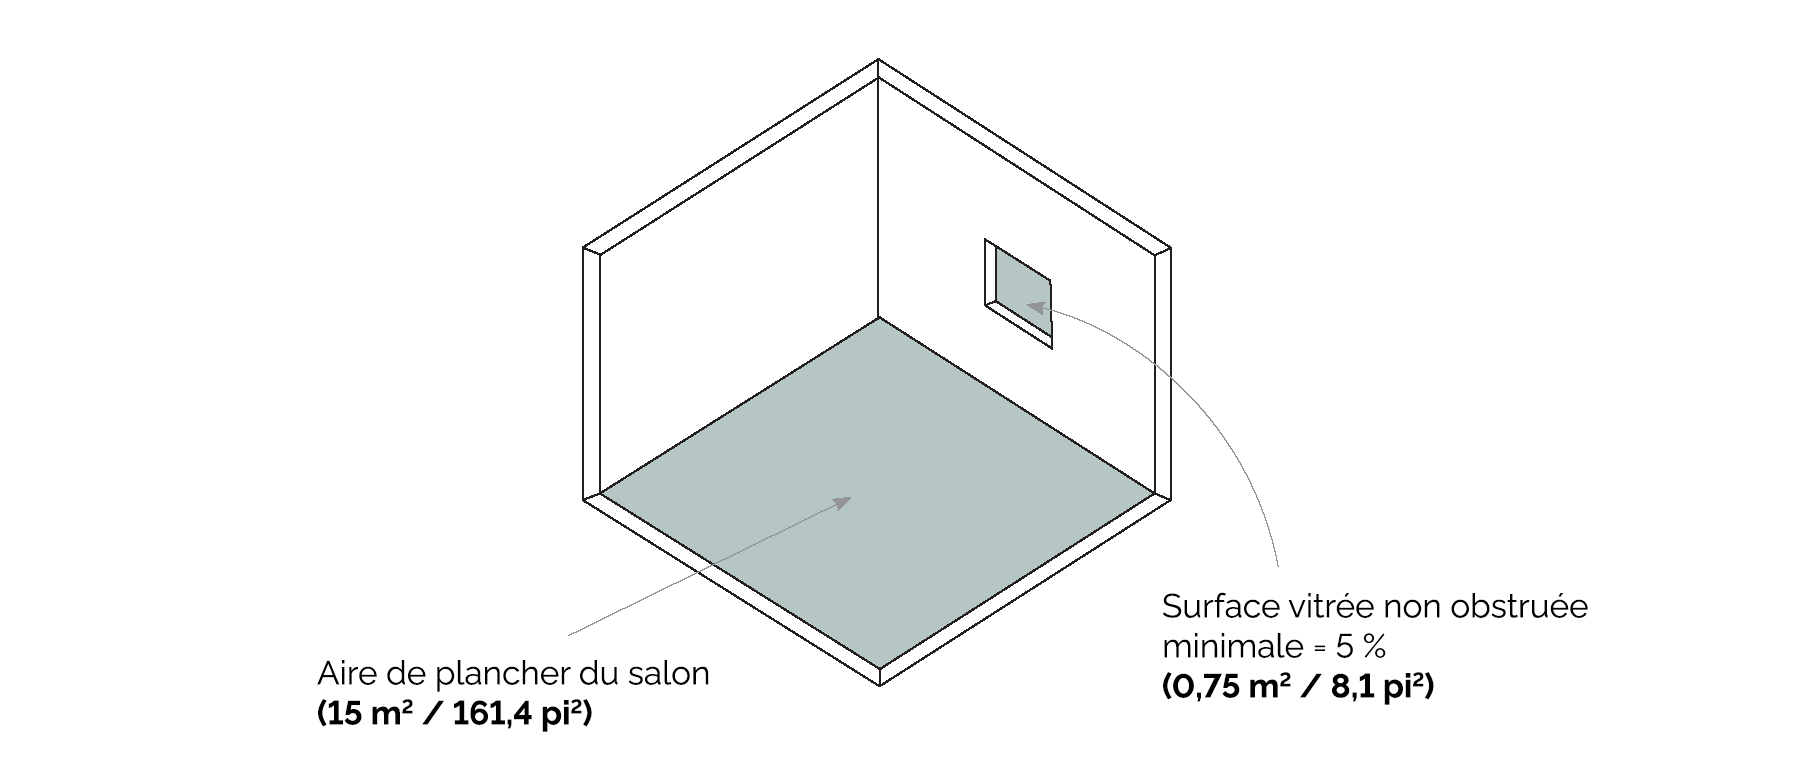 Schéma montrant comment calculer la superficie d'une fenêtre en fonction de celle de la pièce d’un bâtiment existant.